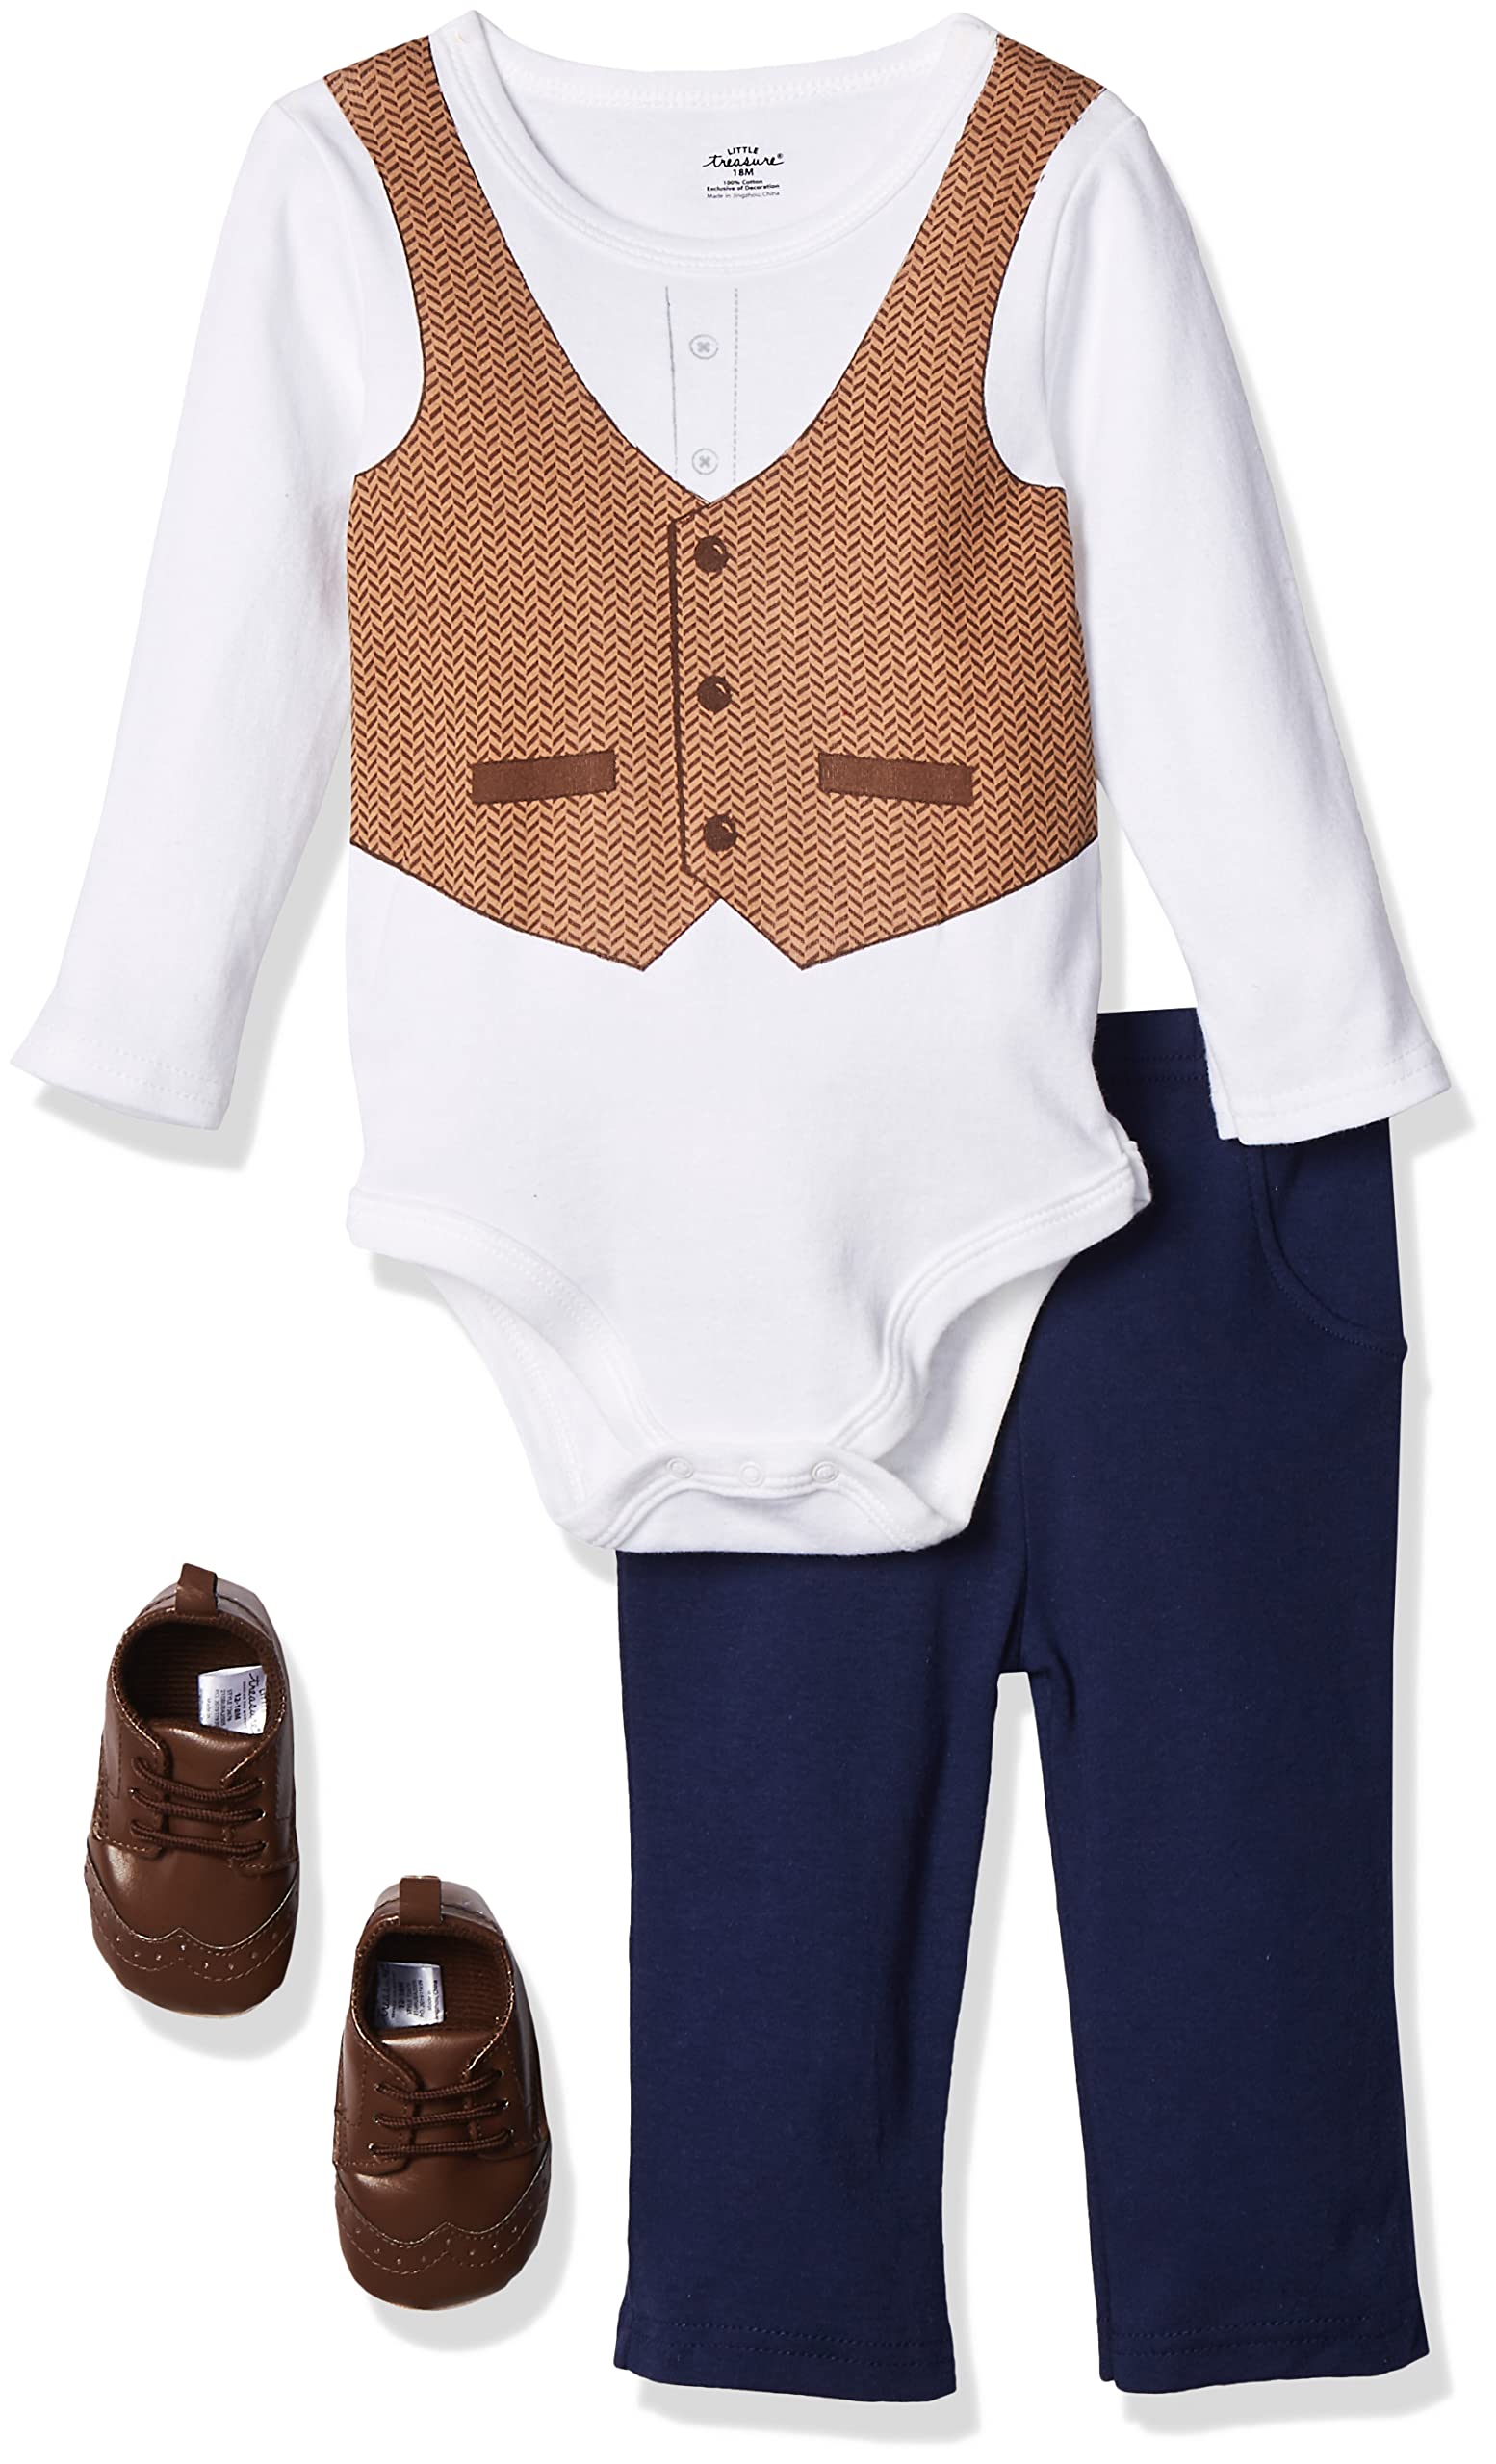 Little Treasure Unisex Baby Cotton Bodysuit, Pant and Shoe Set